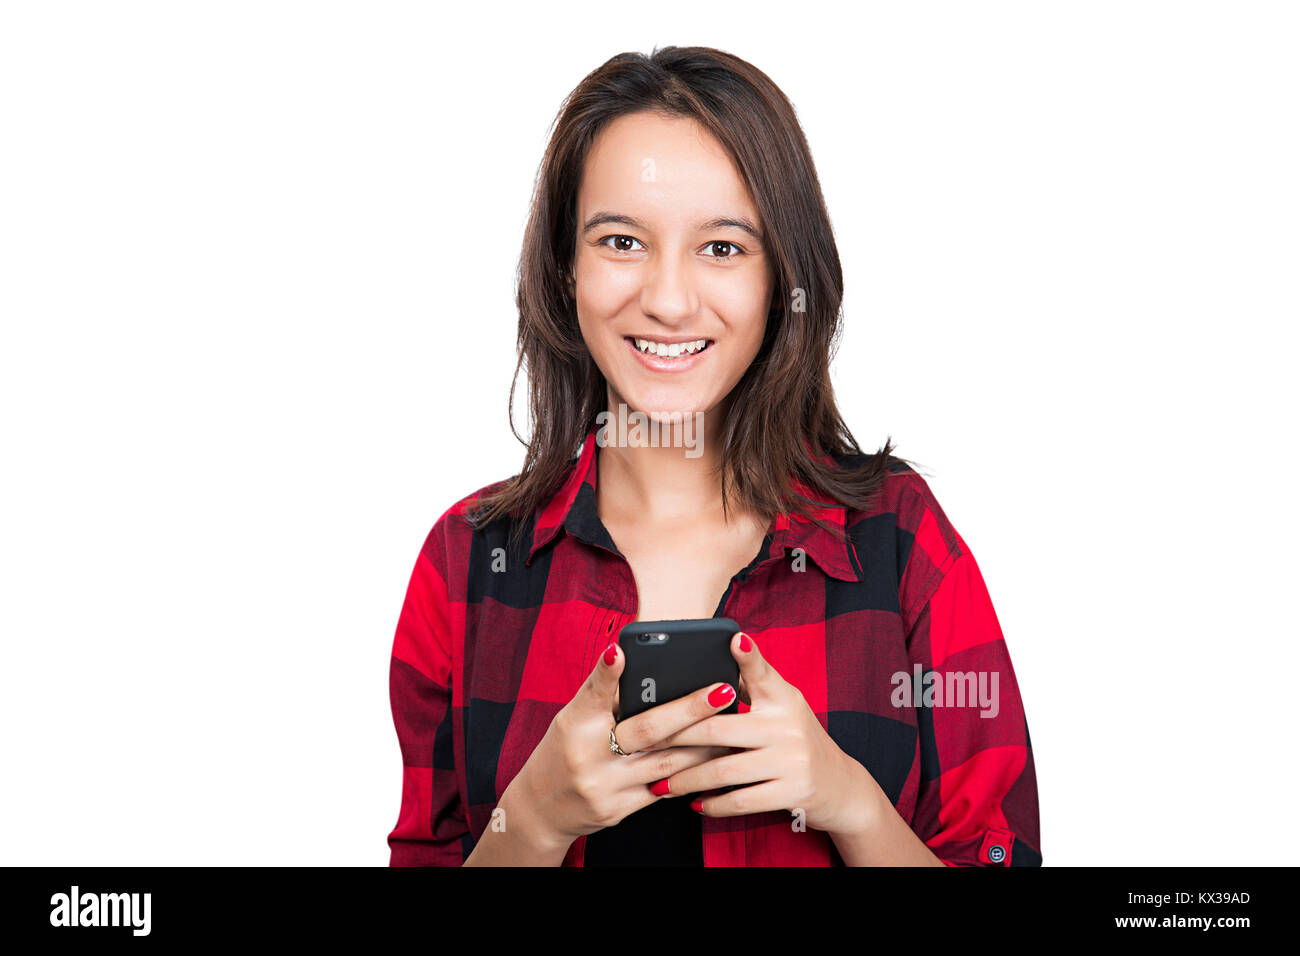 1 indischer Jugendlicher Mädchen Senden von SMS auf Handy Lächeln Stockfoto